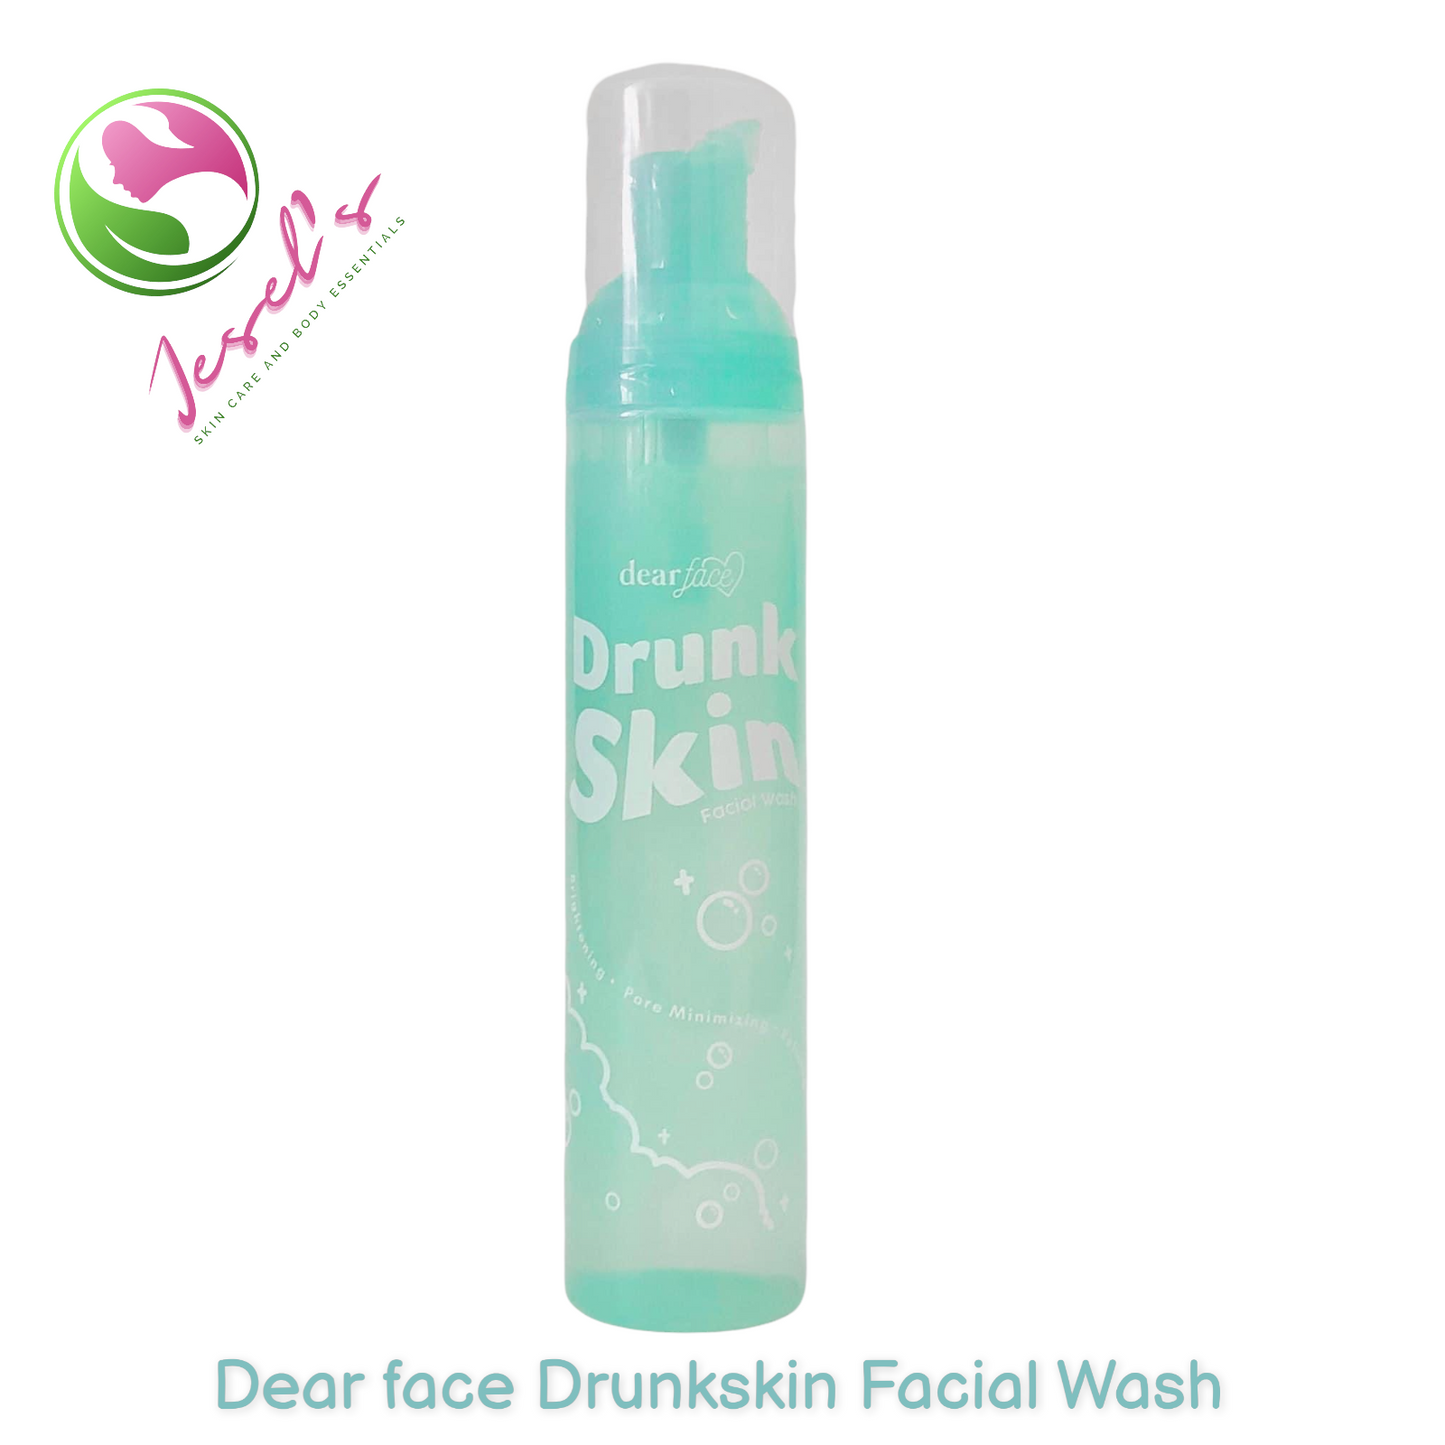 Dear face Drunk skin Facial Wash